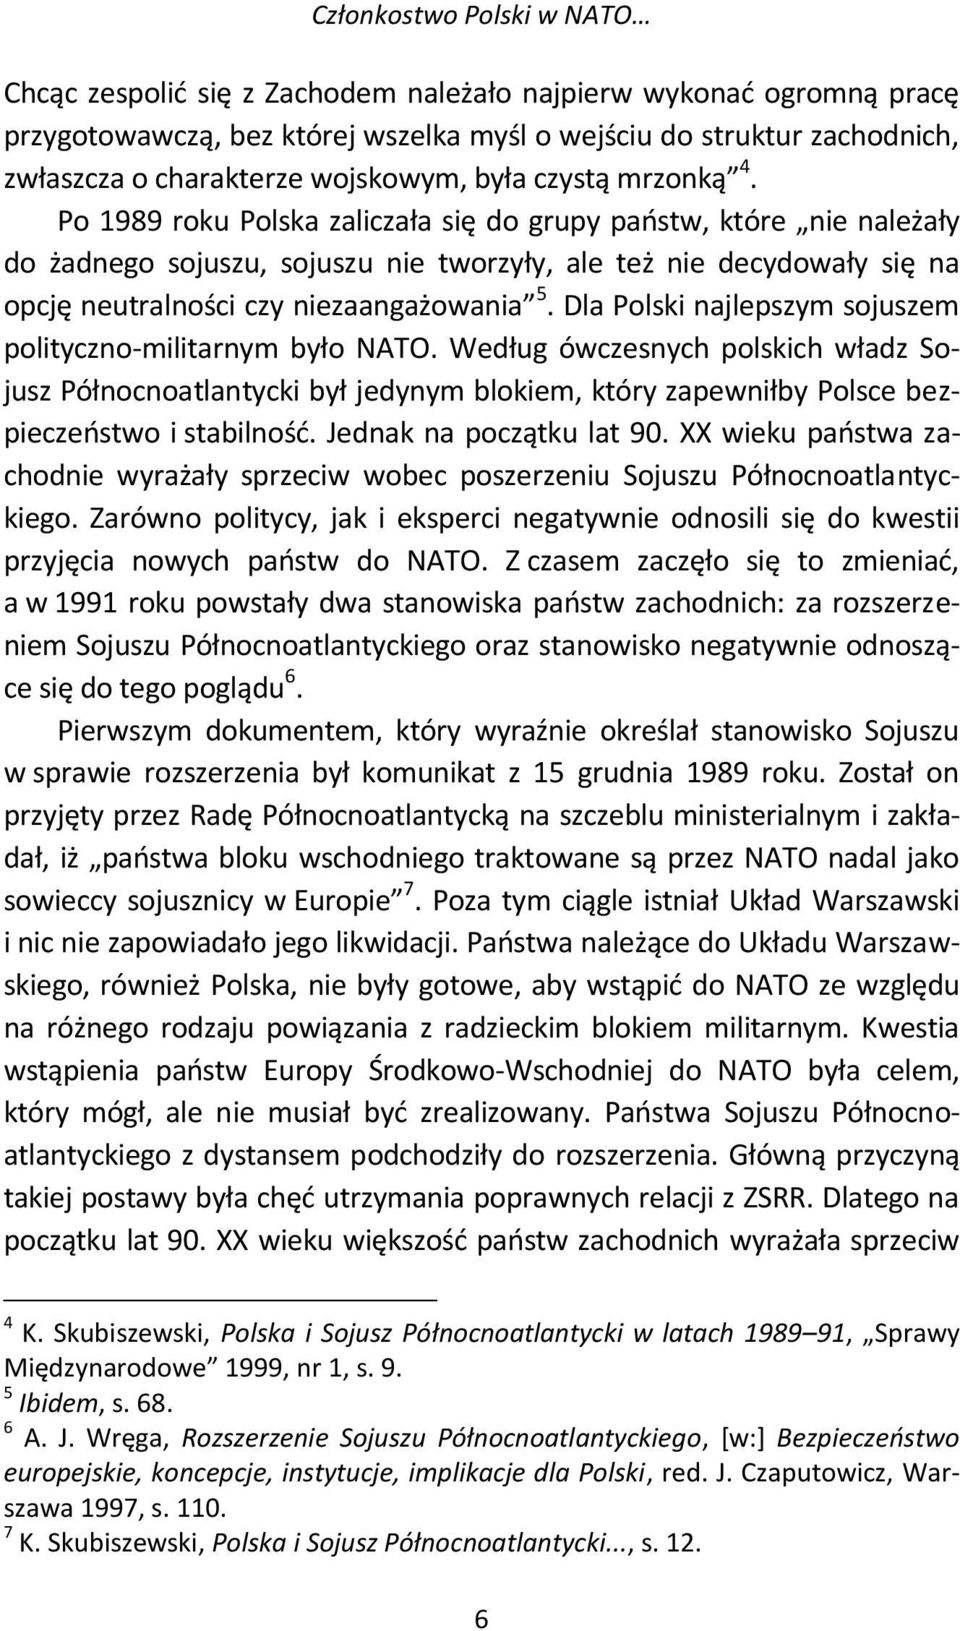 Po 1989 roku Polska zaliczała się do grupy państw, które nie należały do żadnego sojuszu, sojuszu nie tworzyły, ale też nie decydowały się na opcję neutralności czy niezaangażowania 5.